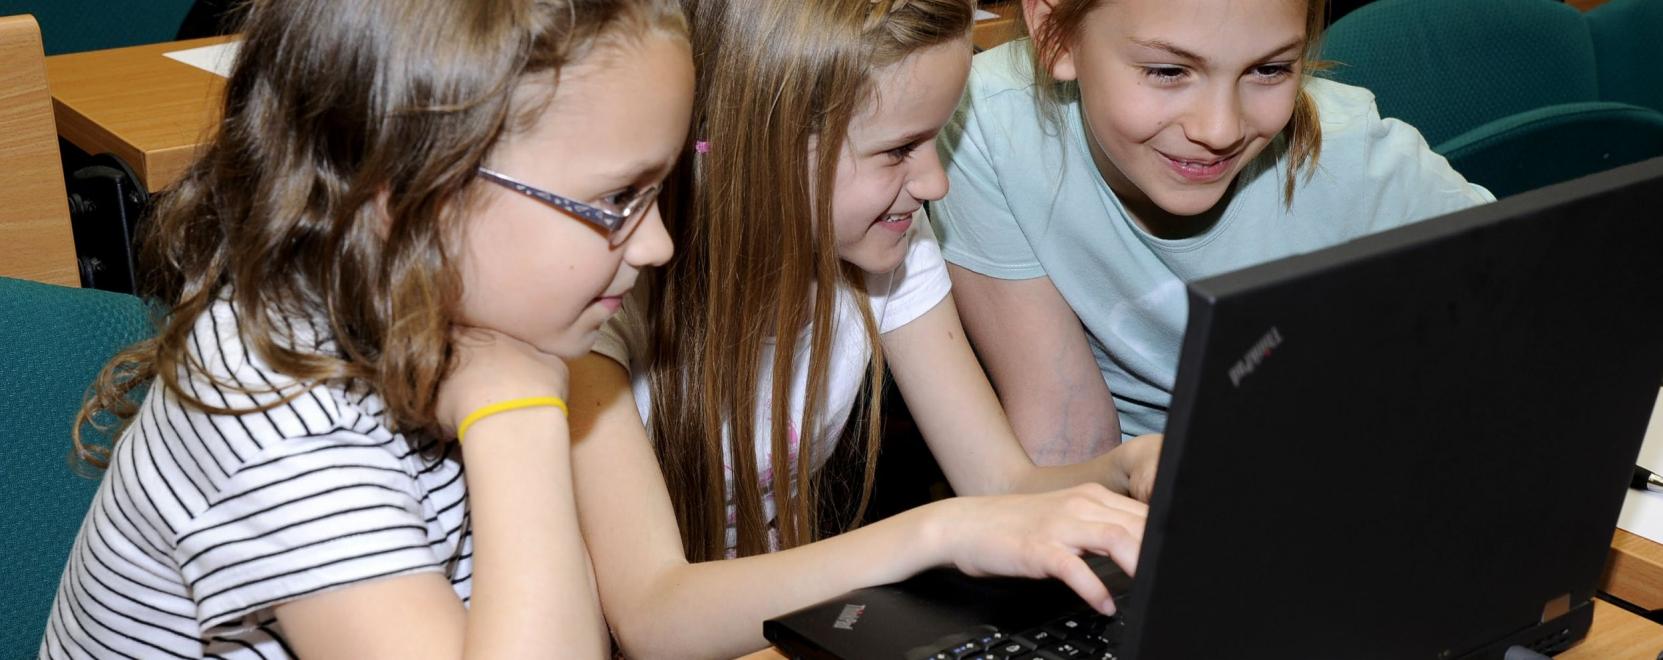 Nagy Digitális Kaland: egyre több a lányversenyző